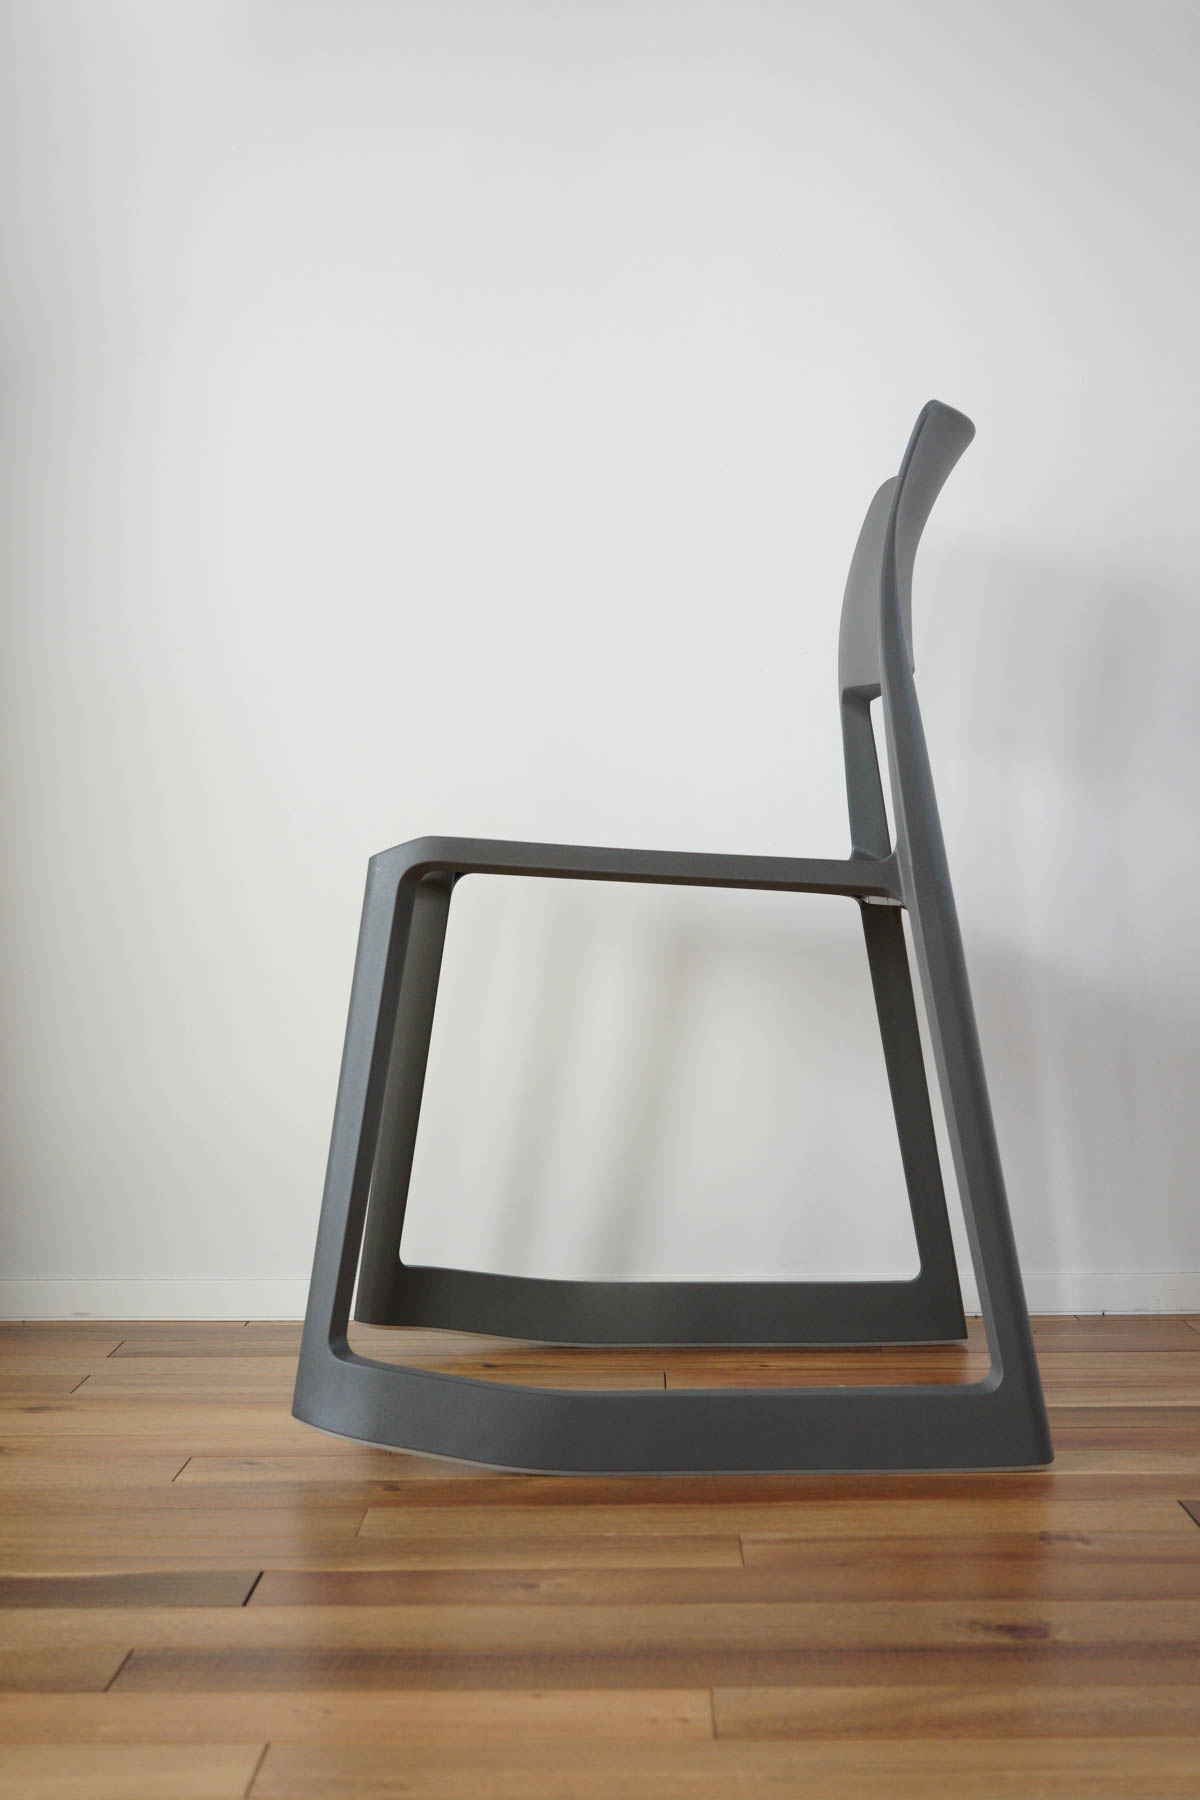 Vitra（ヴィトラ） Tip Ton Chair(ティプトンチェア)の前傾機能